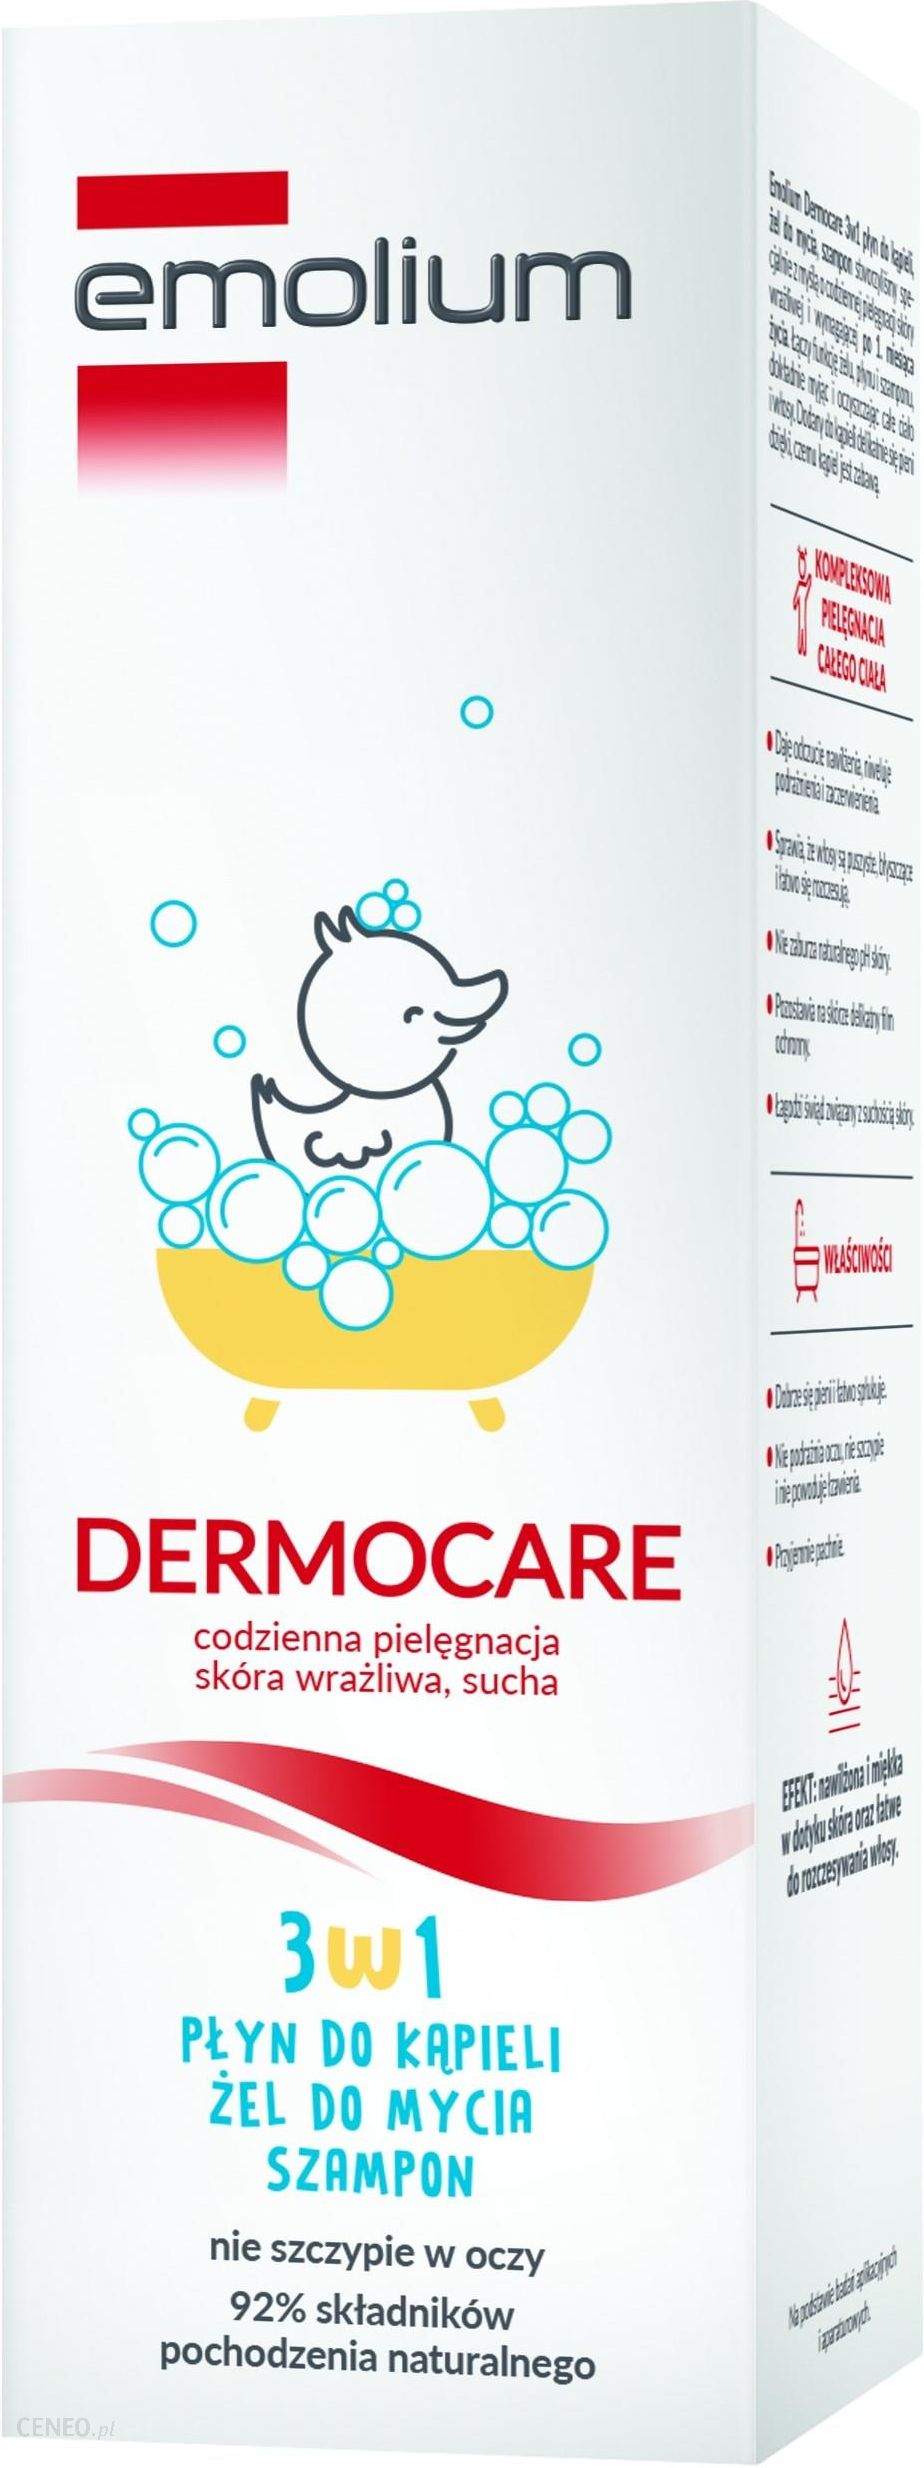 emolium dermocare szampon ceneo